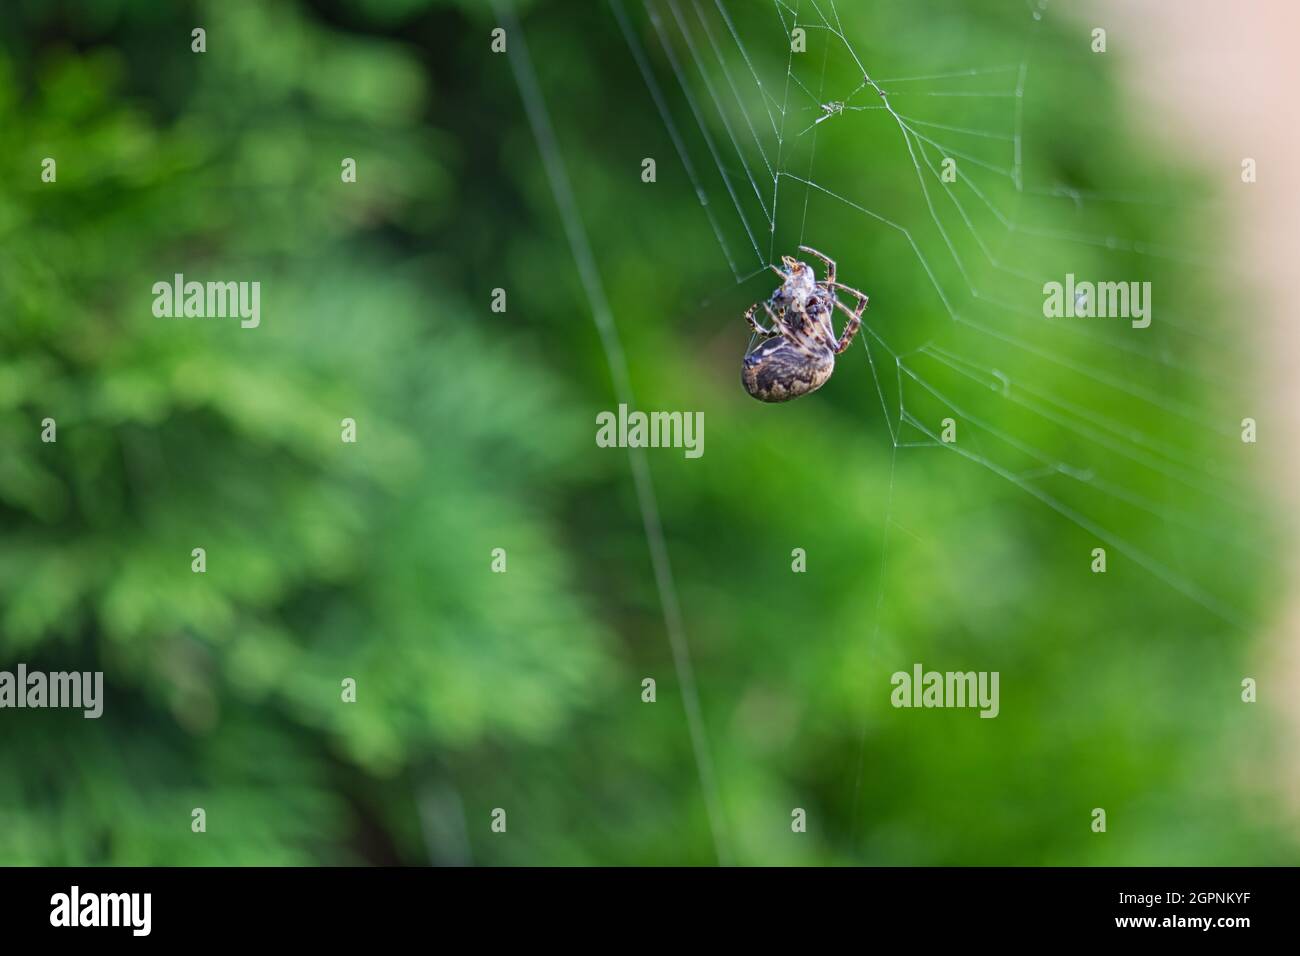 Makroaufnahme von einer Spinne Foto de stock